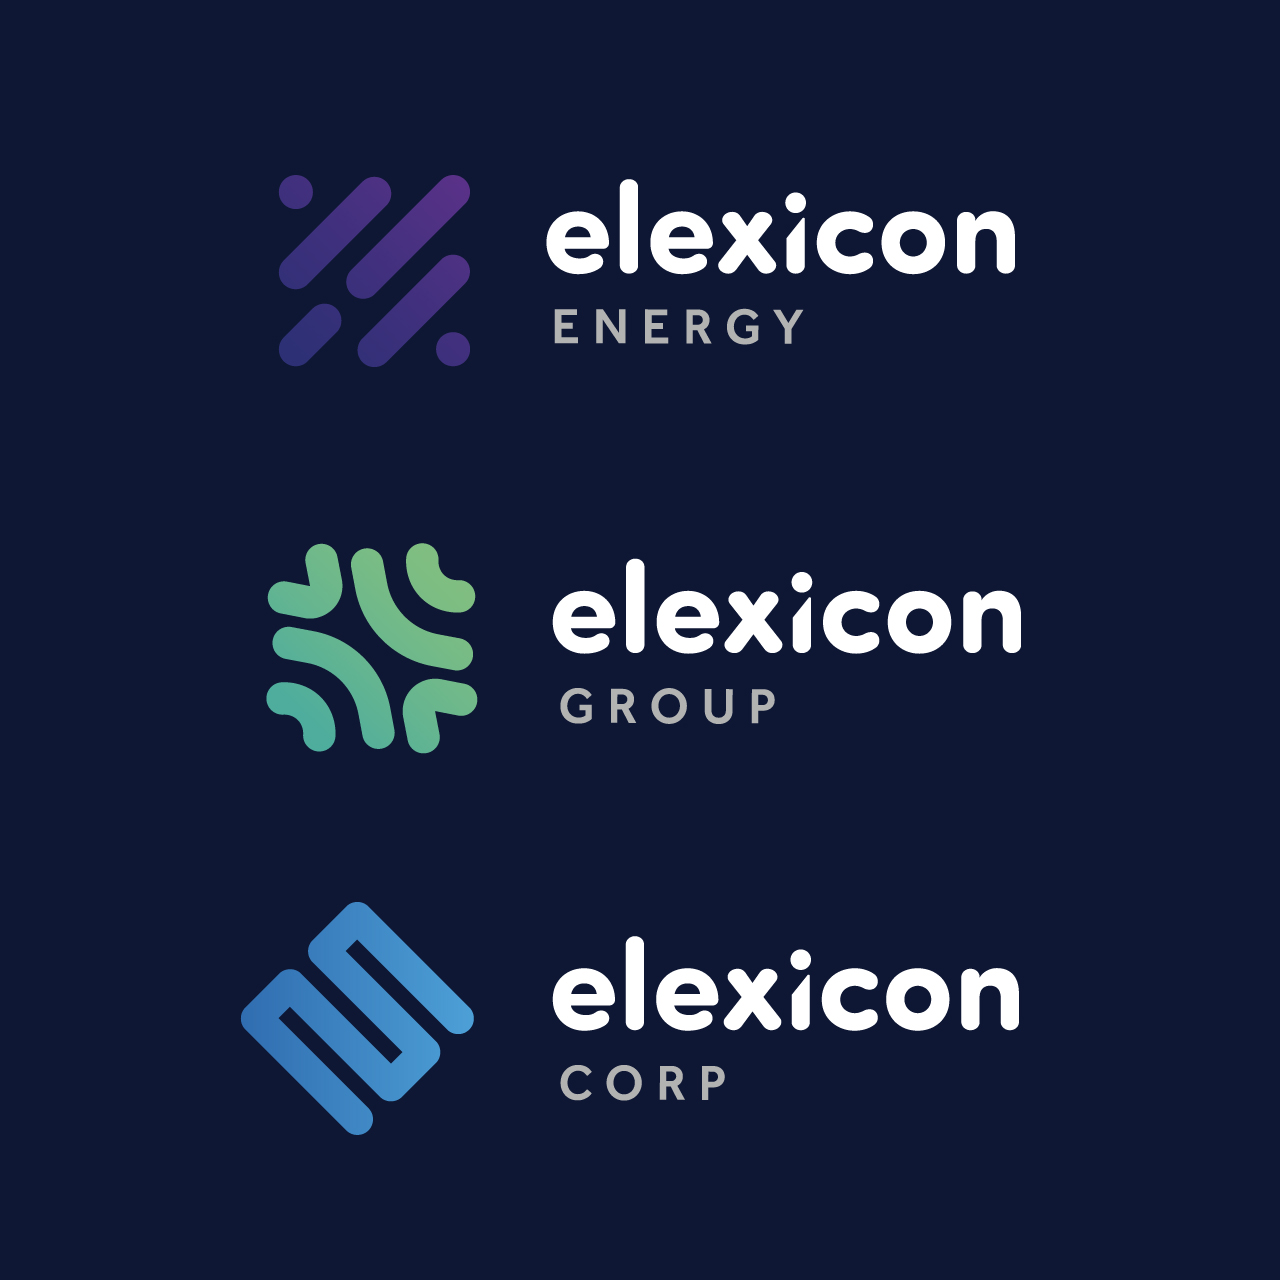 Elexicon branding for Elexicon Energy, Elexicon Group, and Elexicon Corp